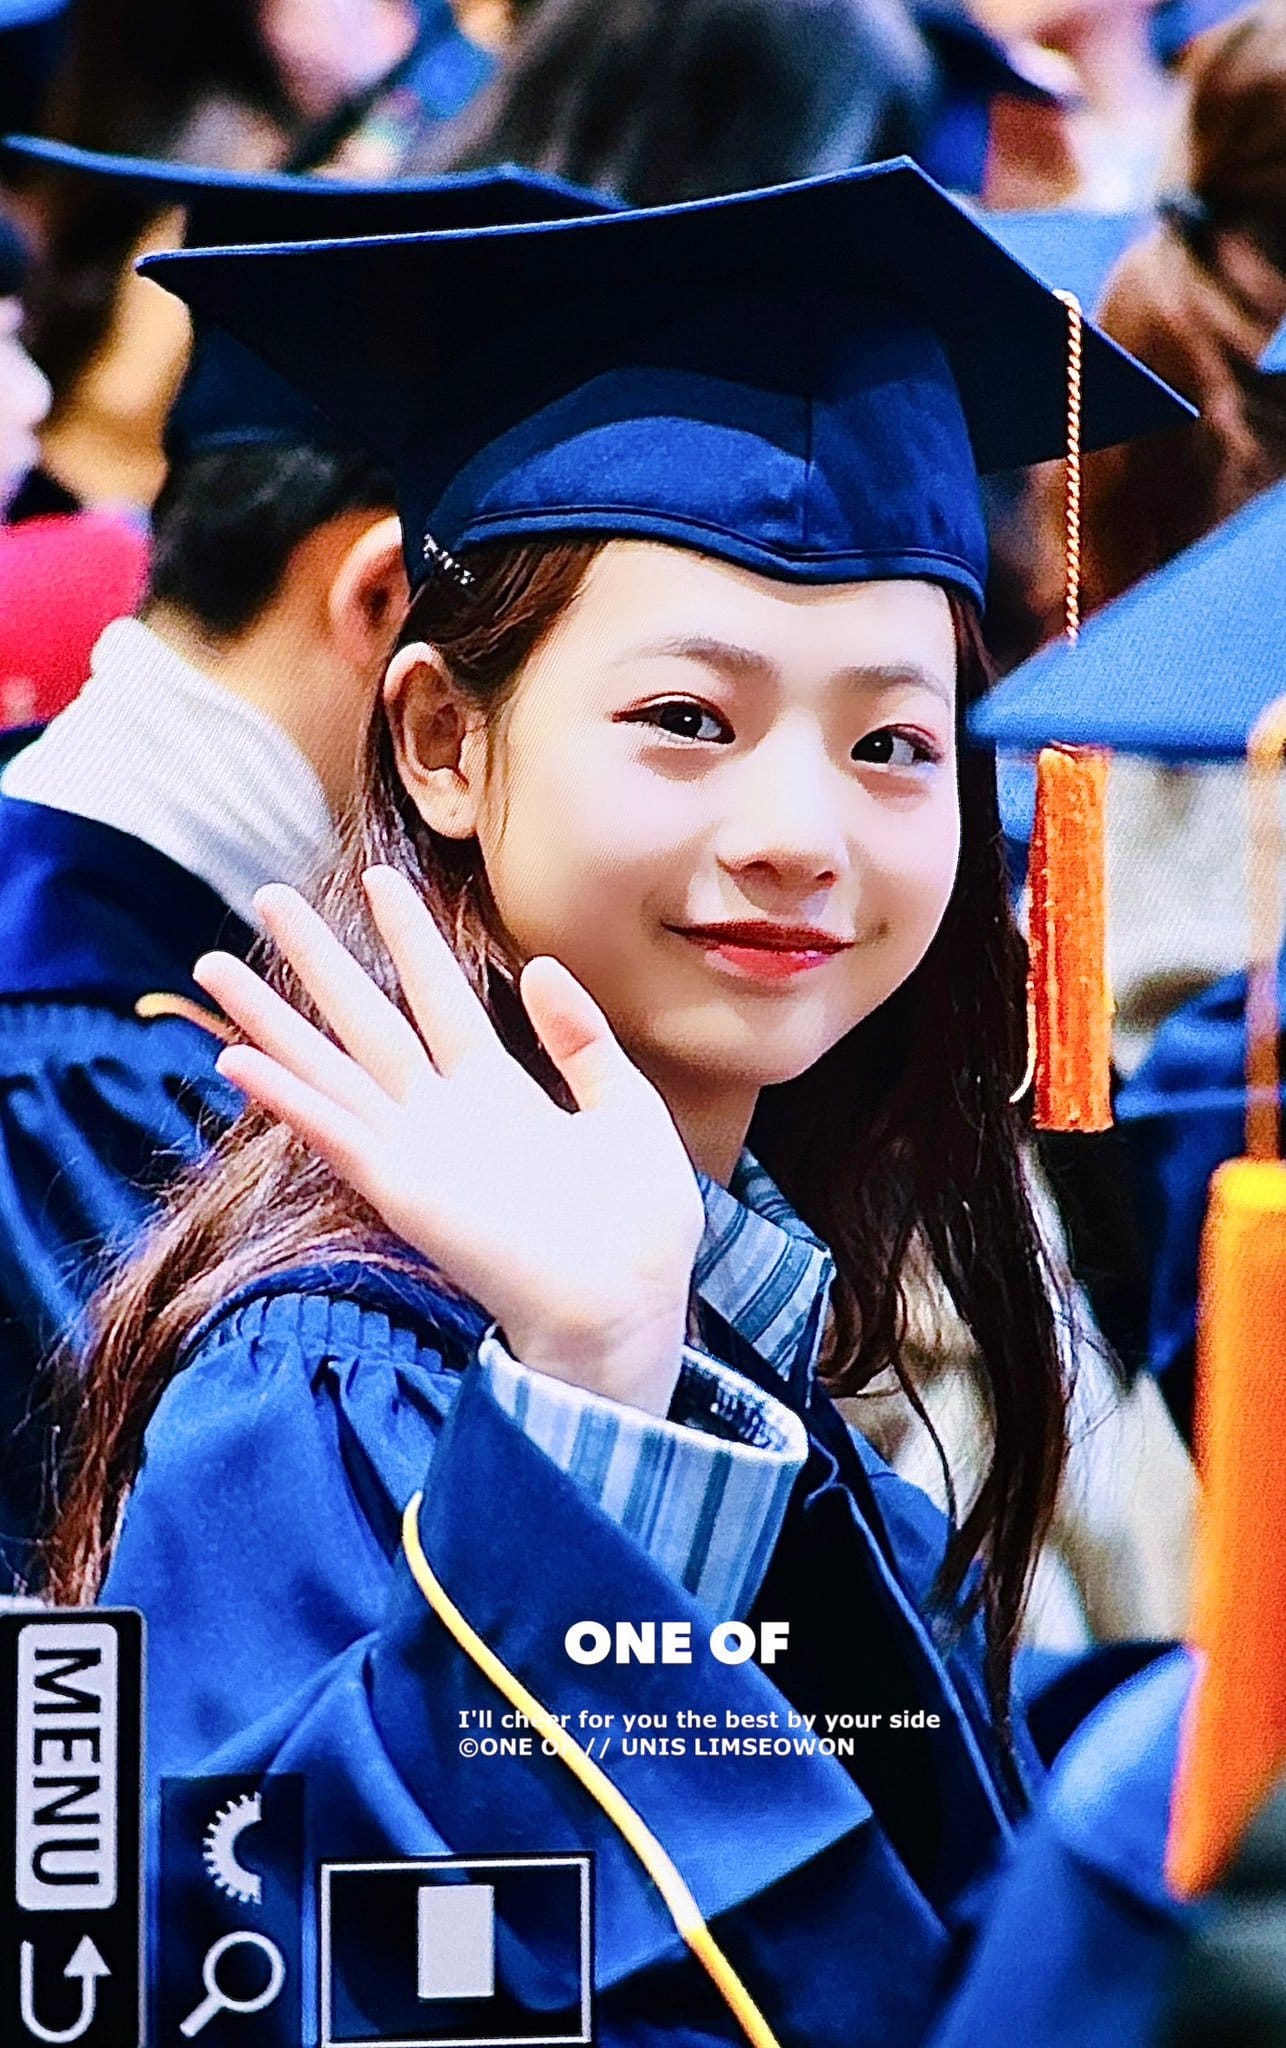 오늘 졸업식사진 올라온 아이돌